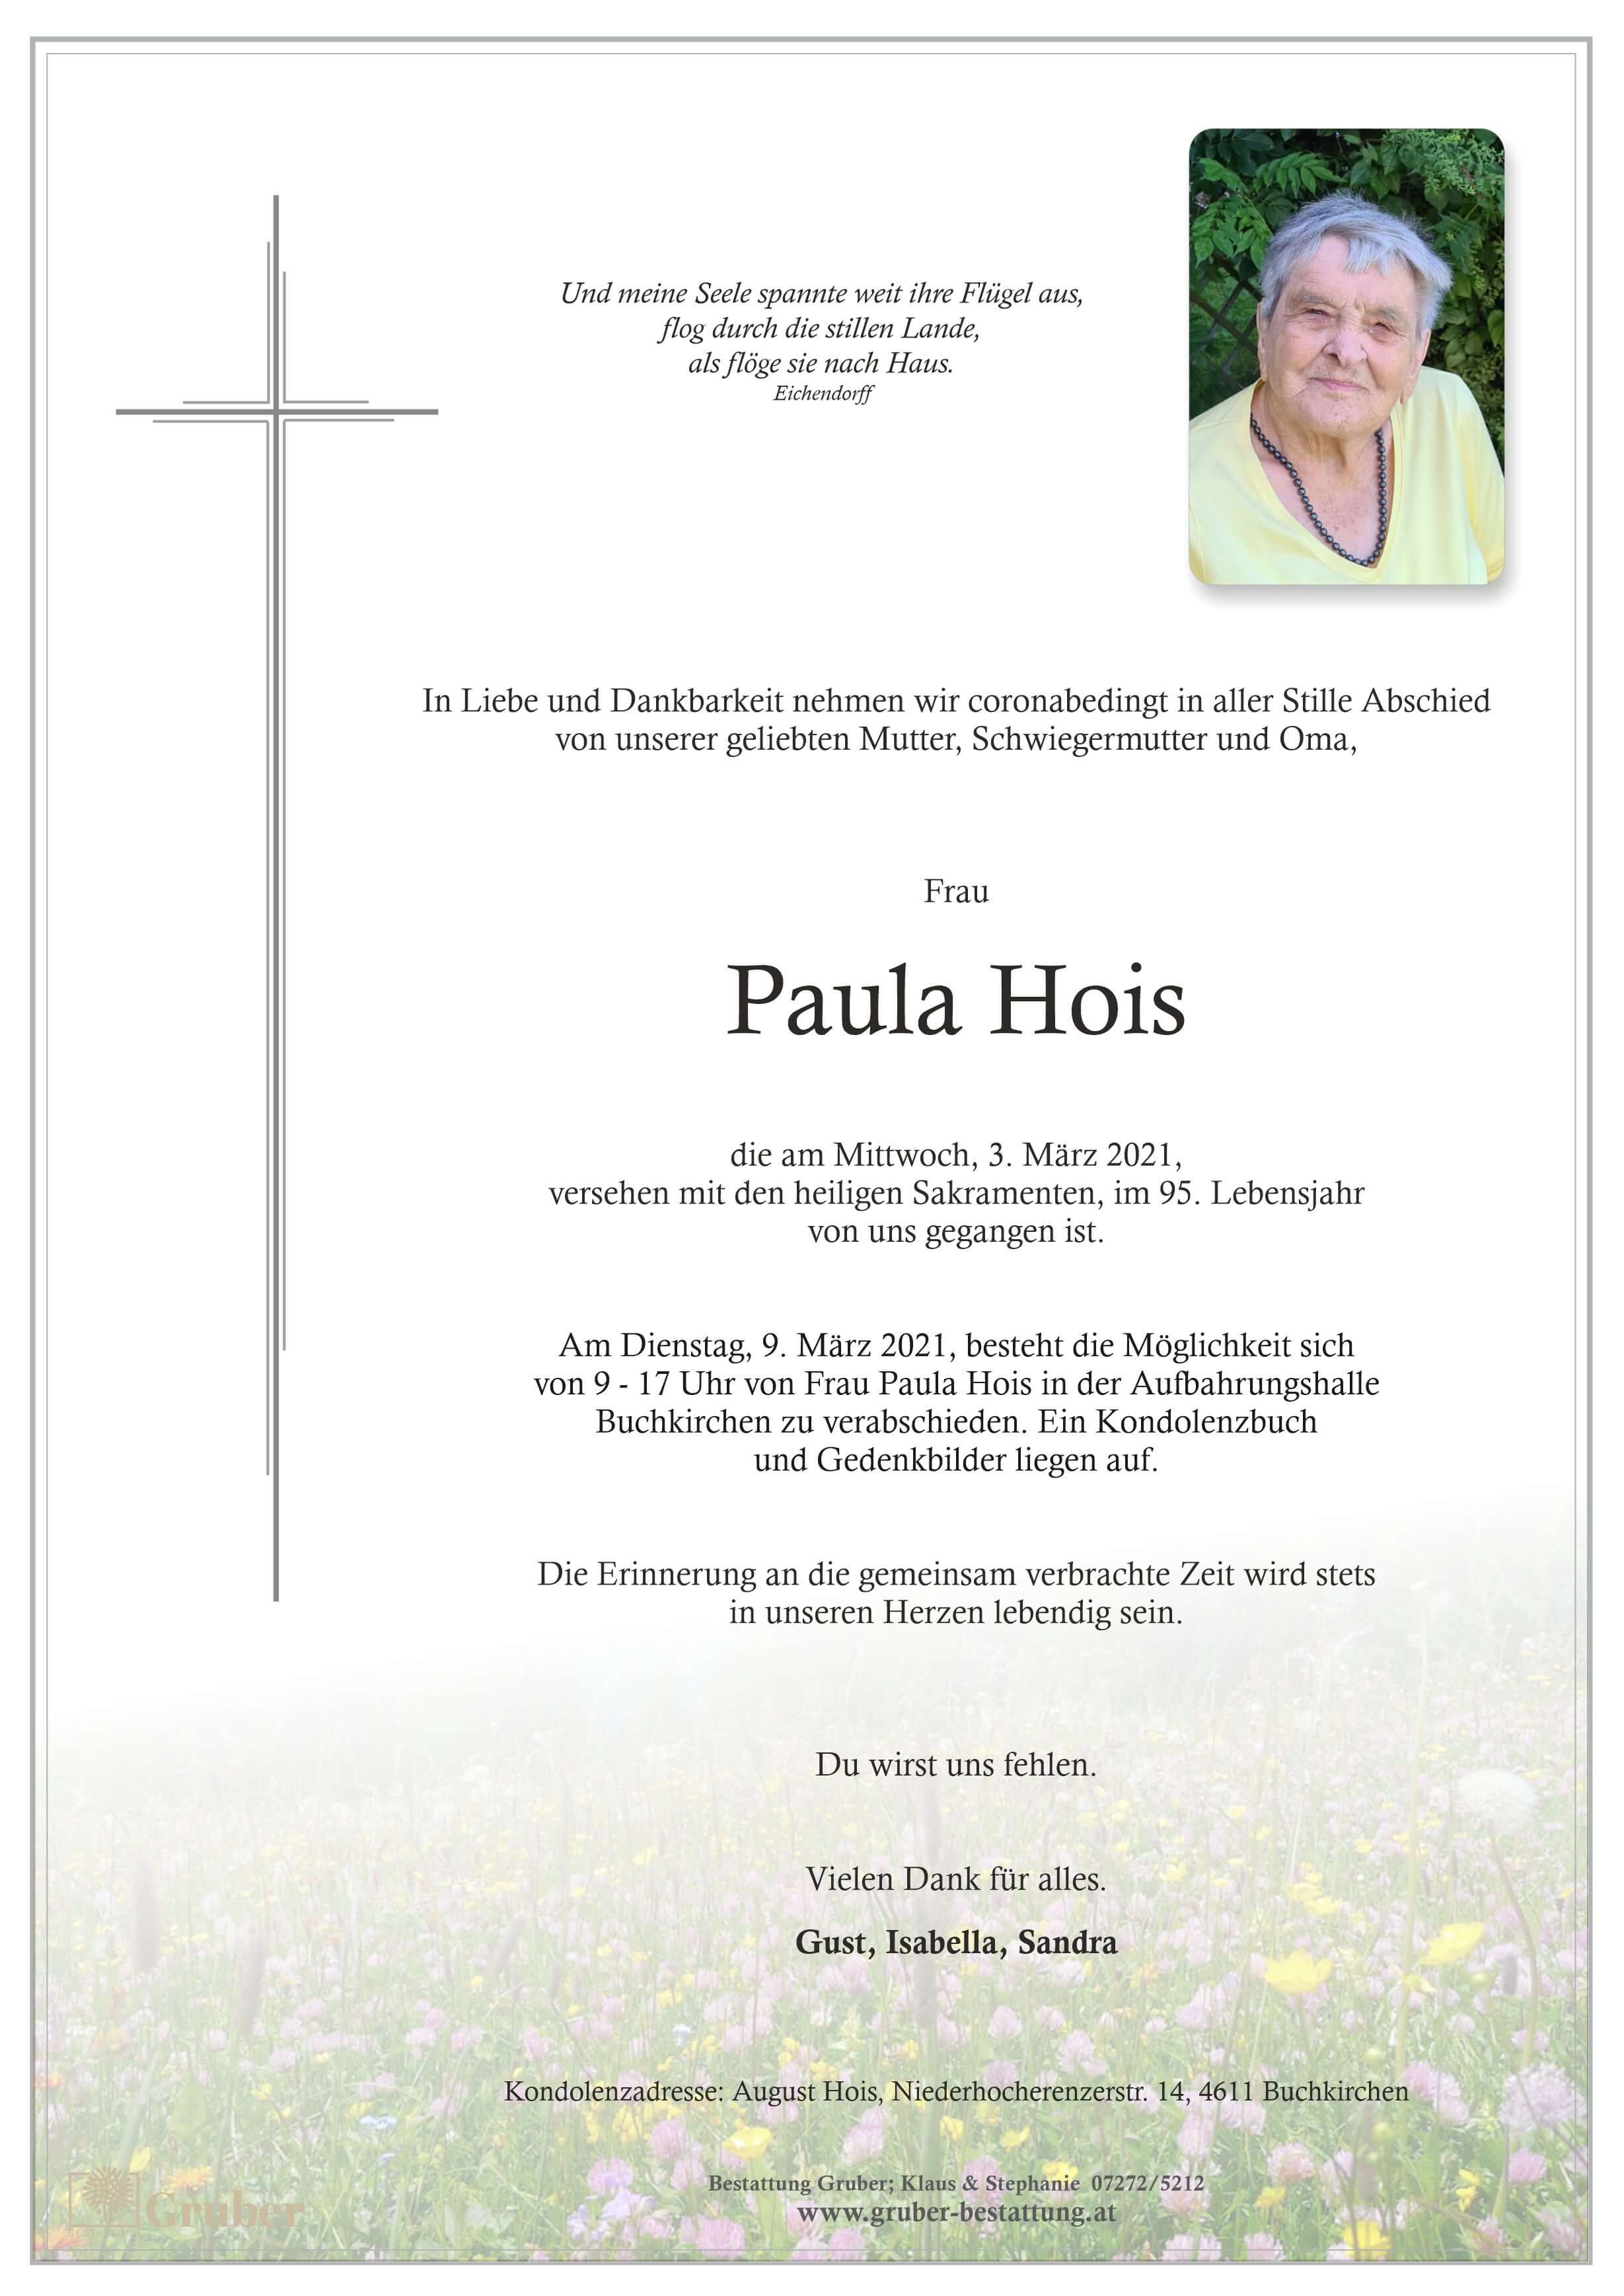 Paula Hois (Buchkirchen)